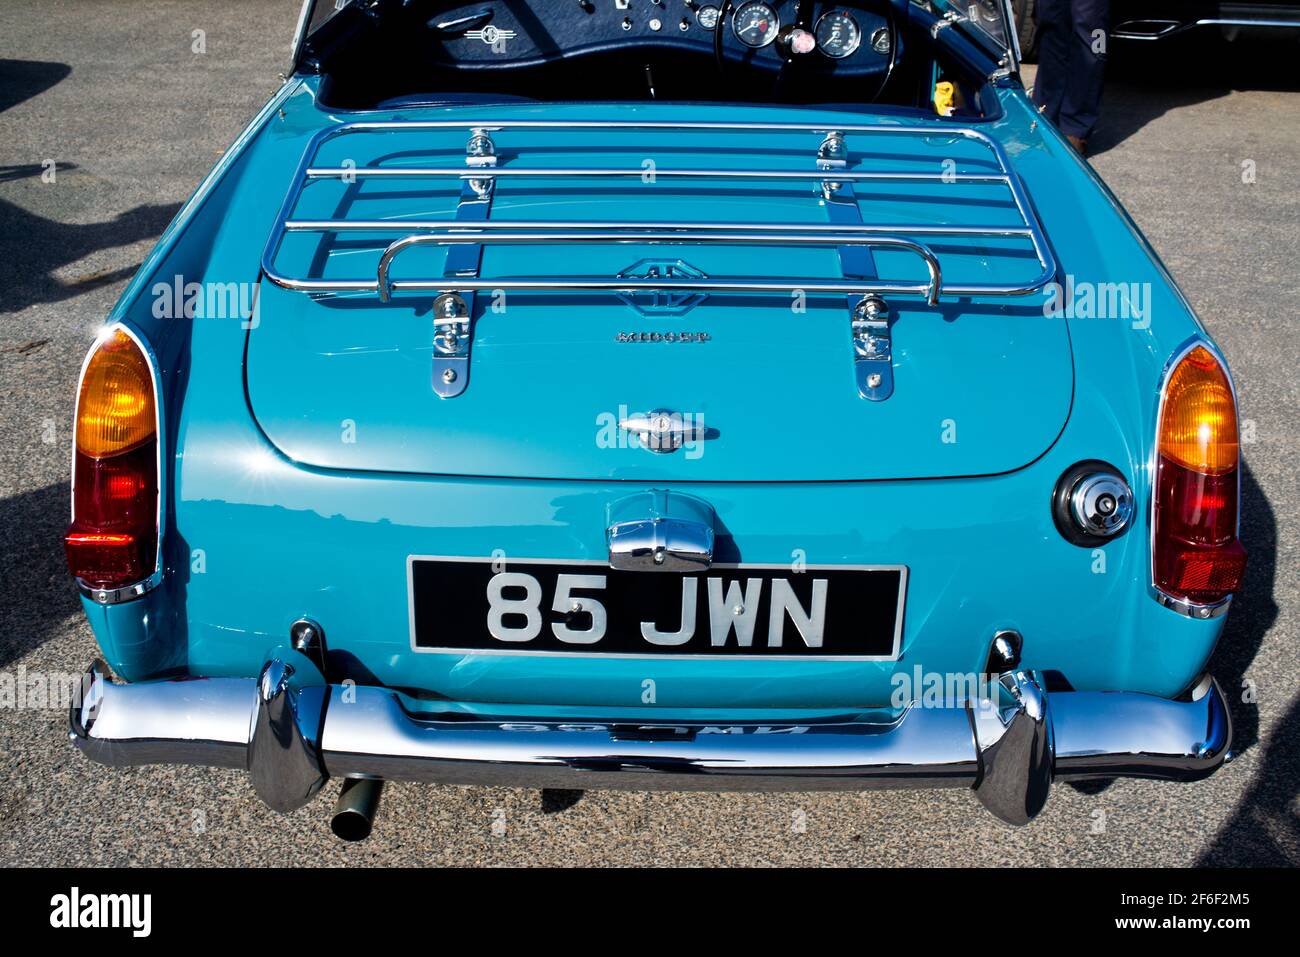 1964 MG Midget Stock Photo